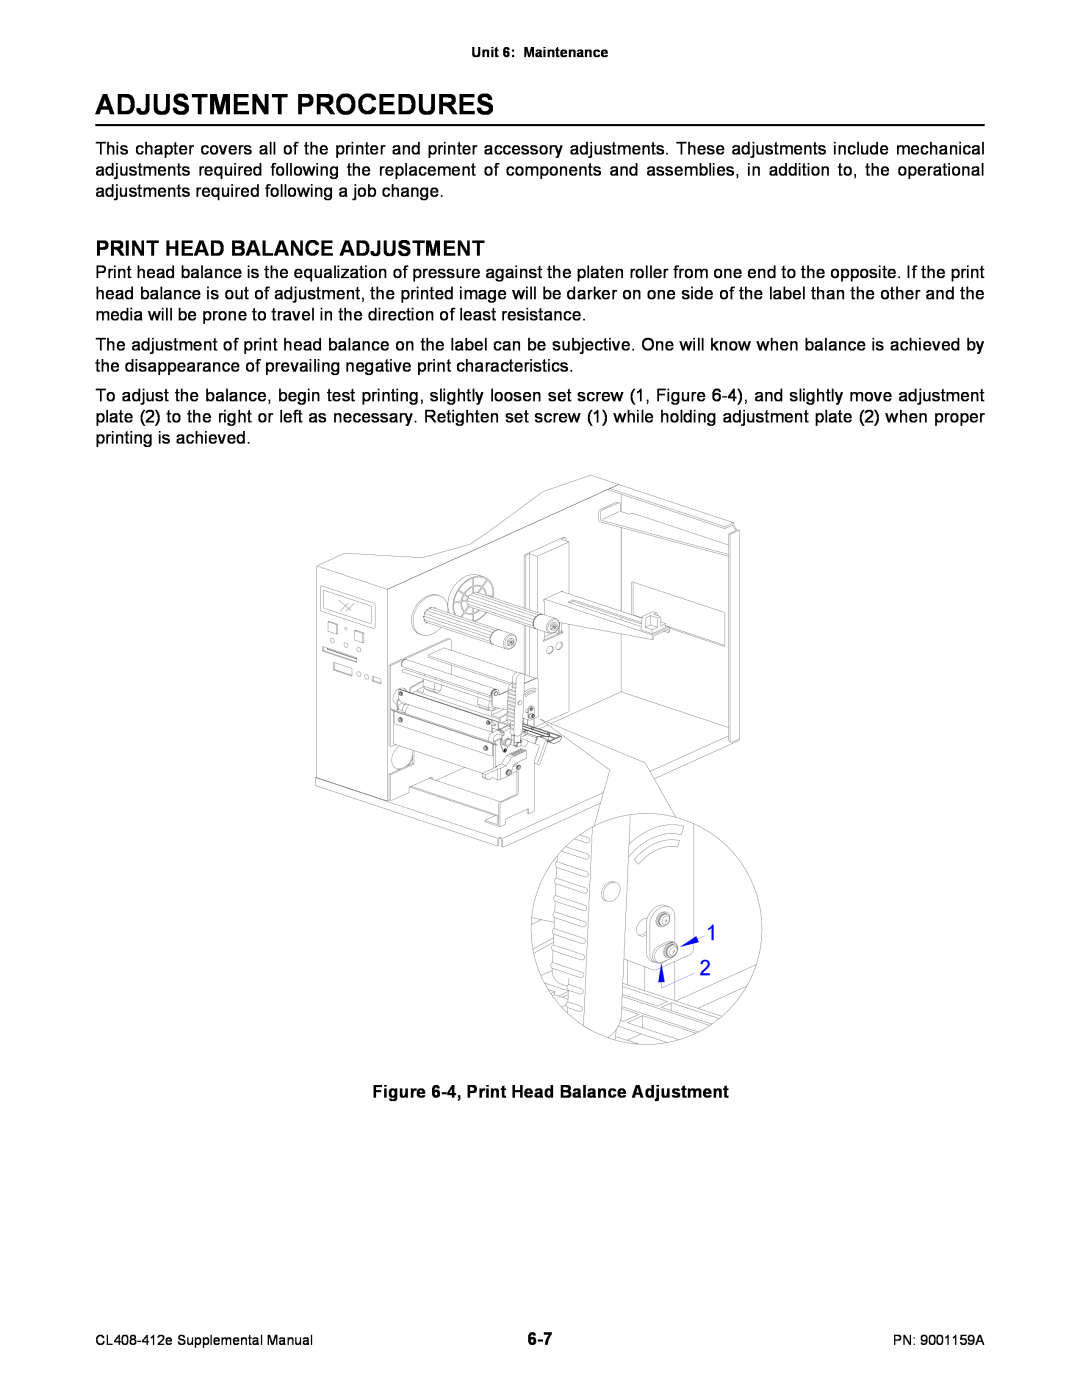 SATO CL408-412e manual Adjustment Procedures, Print Head Balance Adjustment 